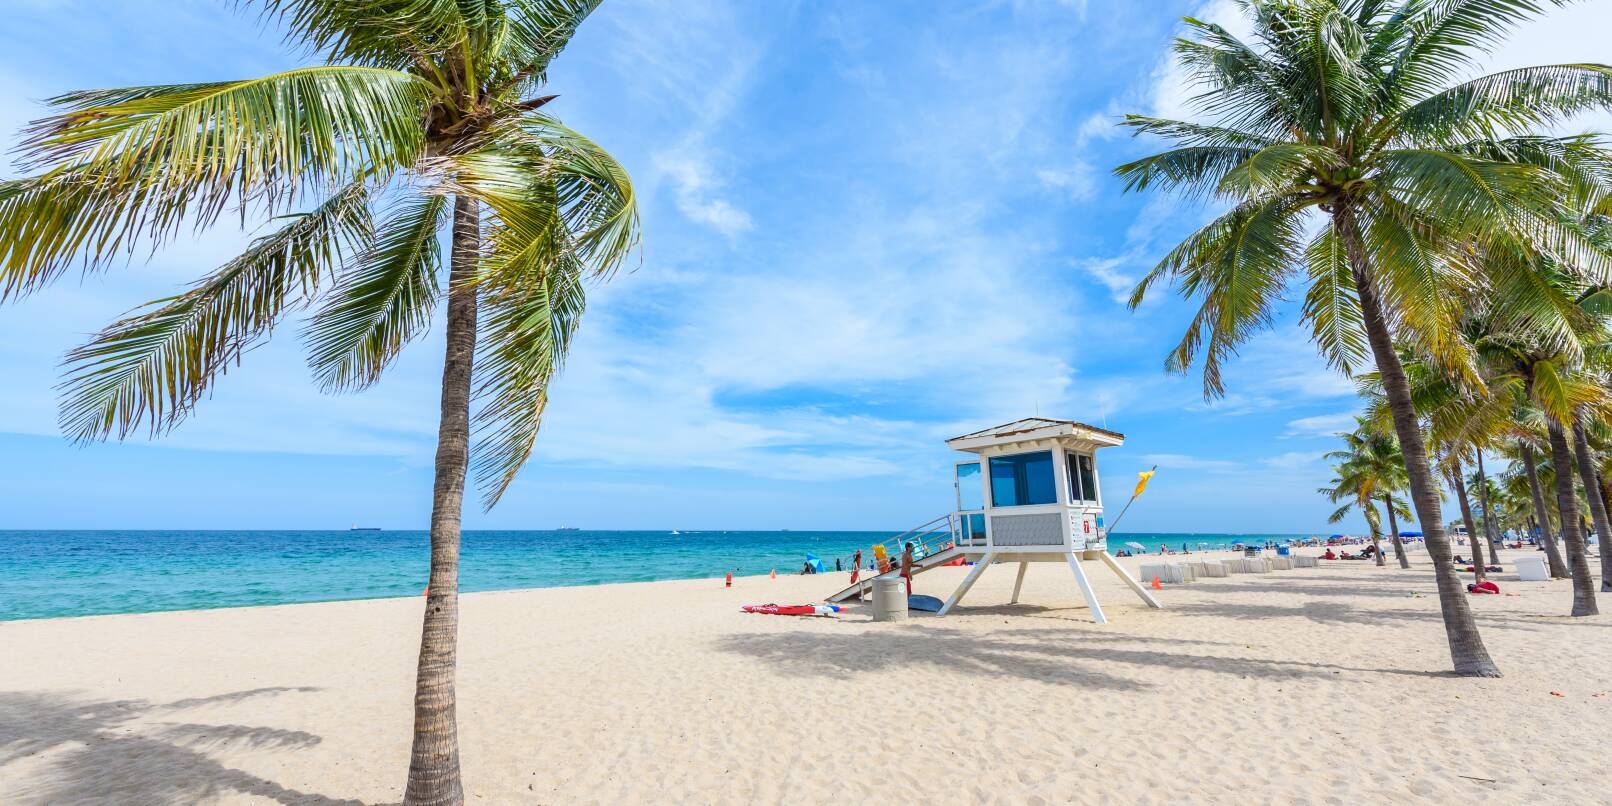 Traumhaft schöne Stände gibt es beispielsweise in Fort Lauderdale in Florida.